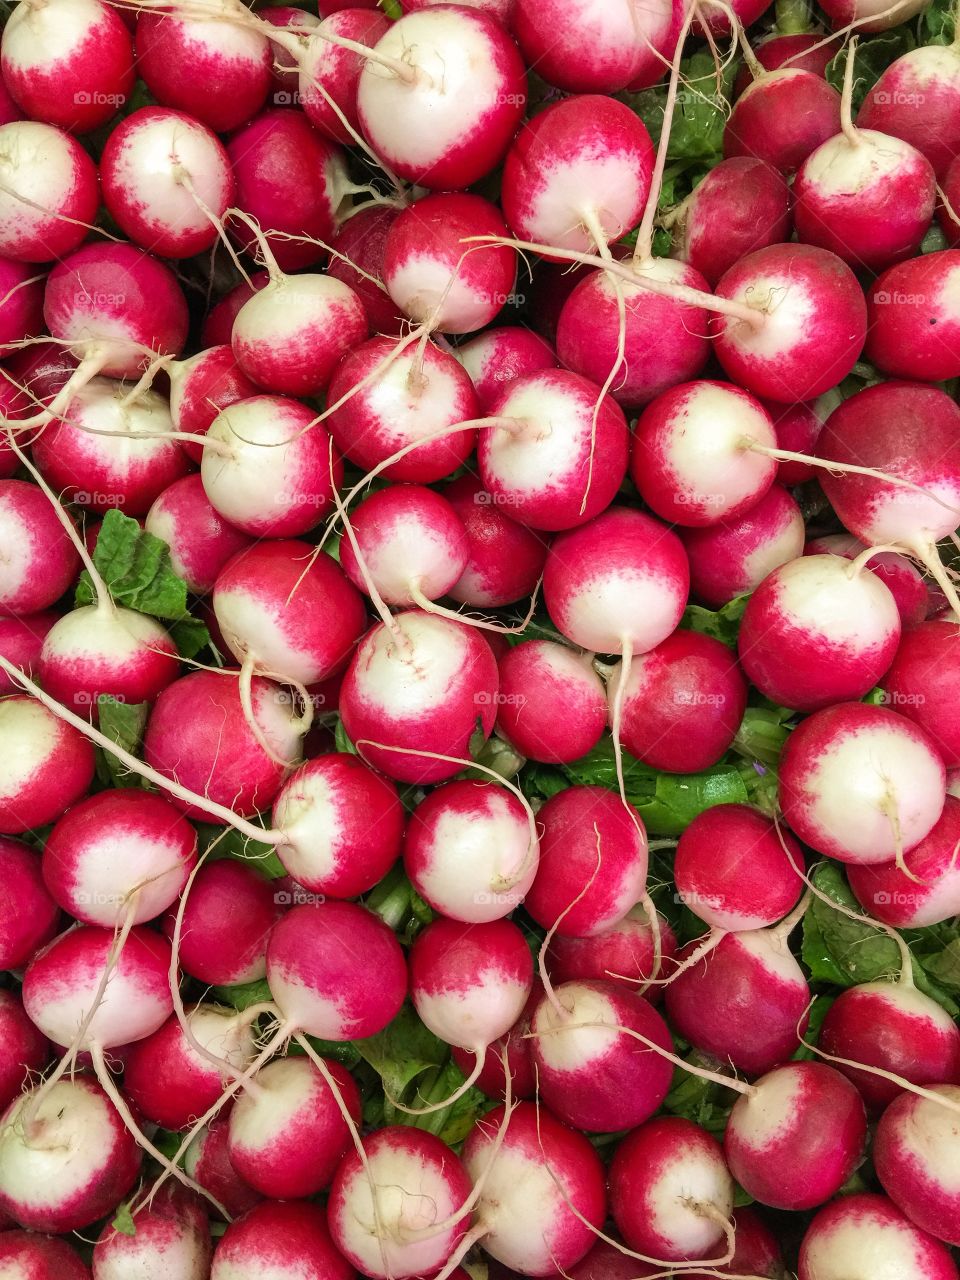 Close-up of radishes